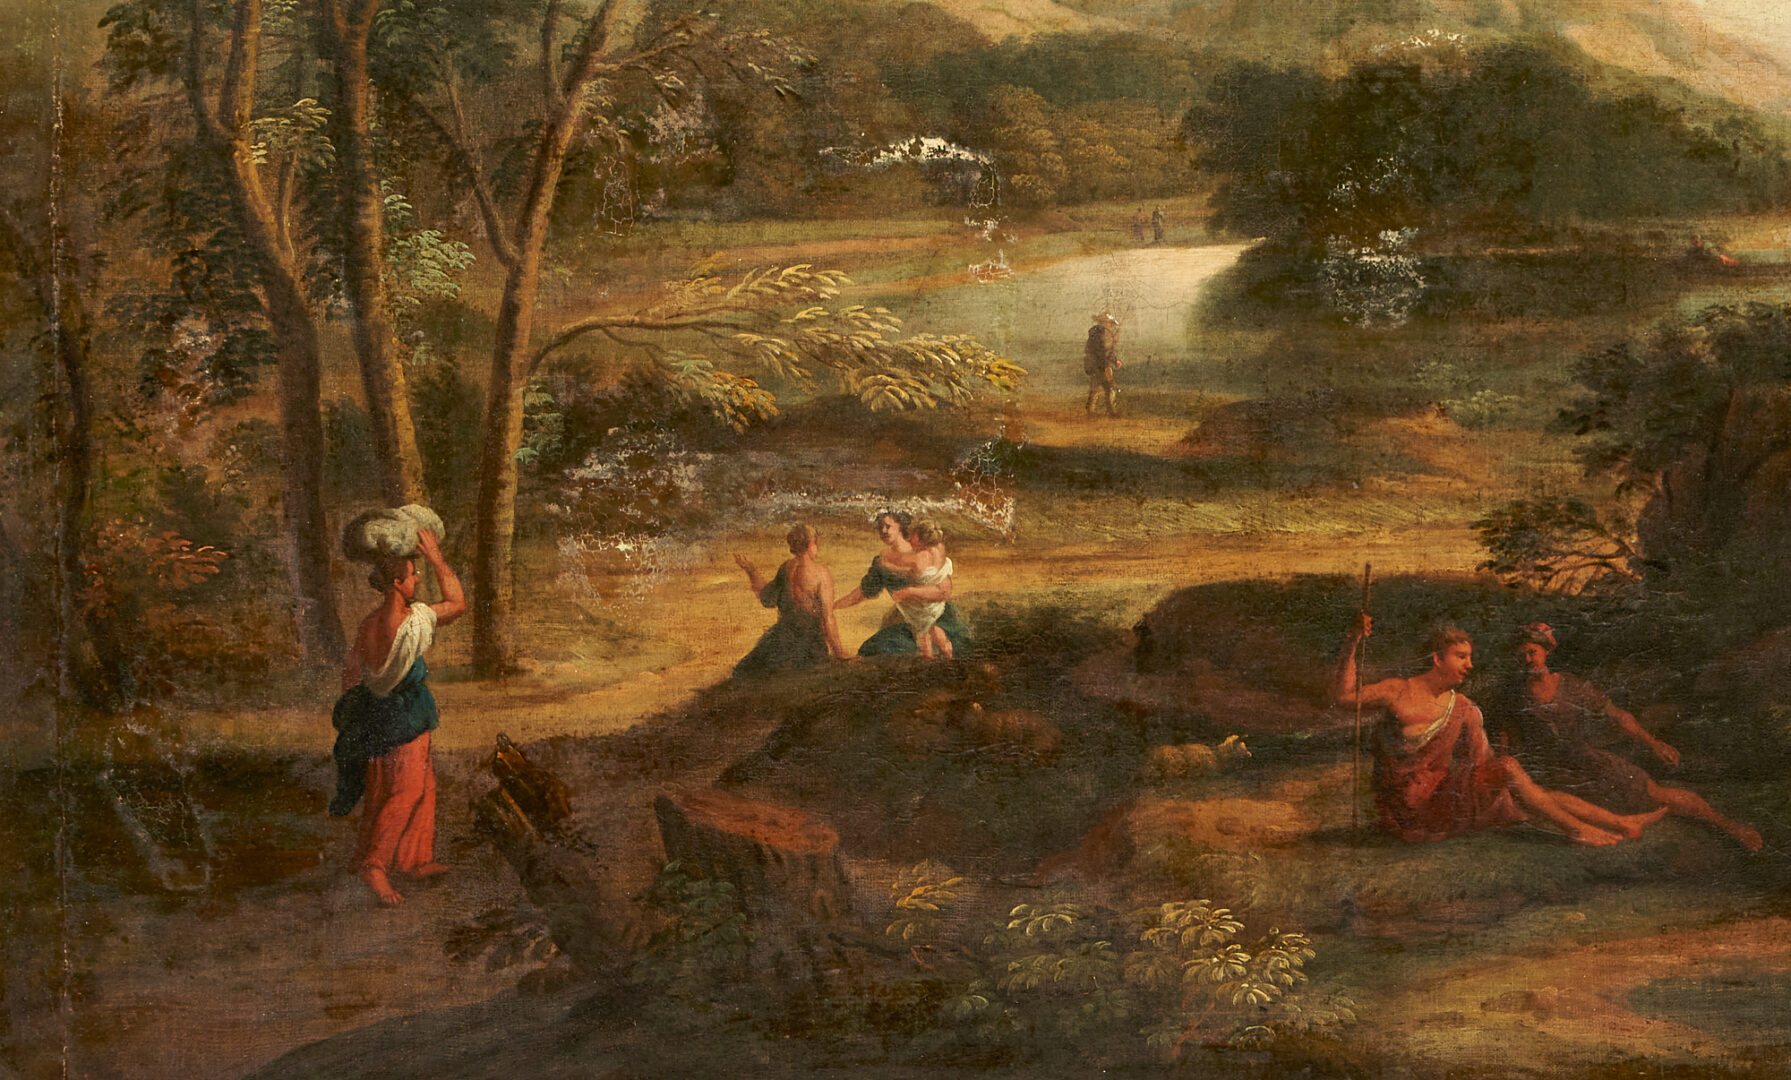 Lot 102: Large European Oil on Canvas Pastoral Landscape, 18th Century